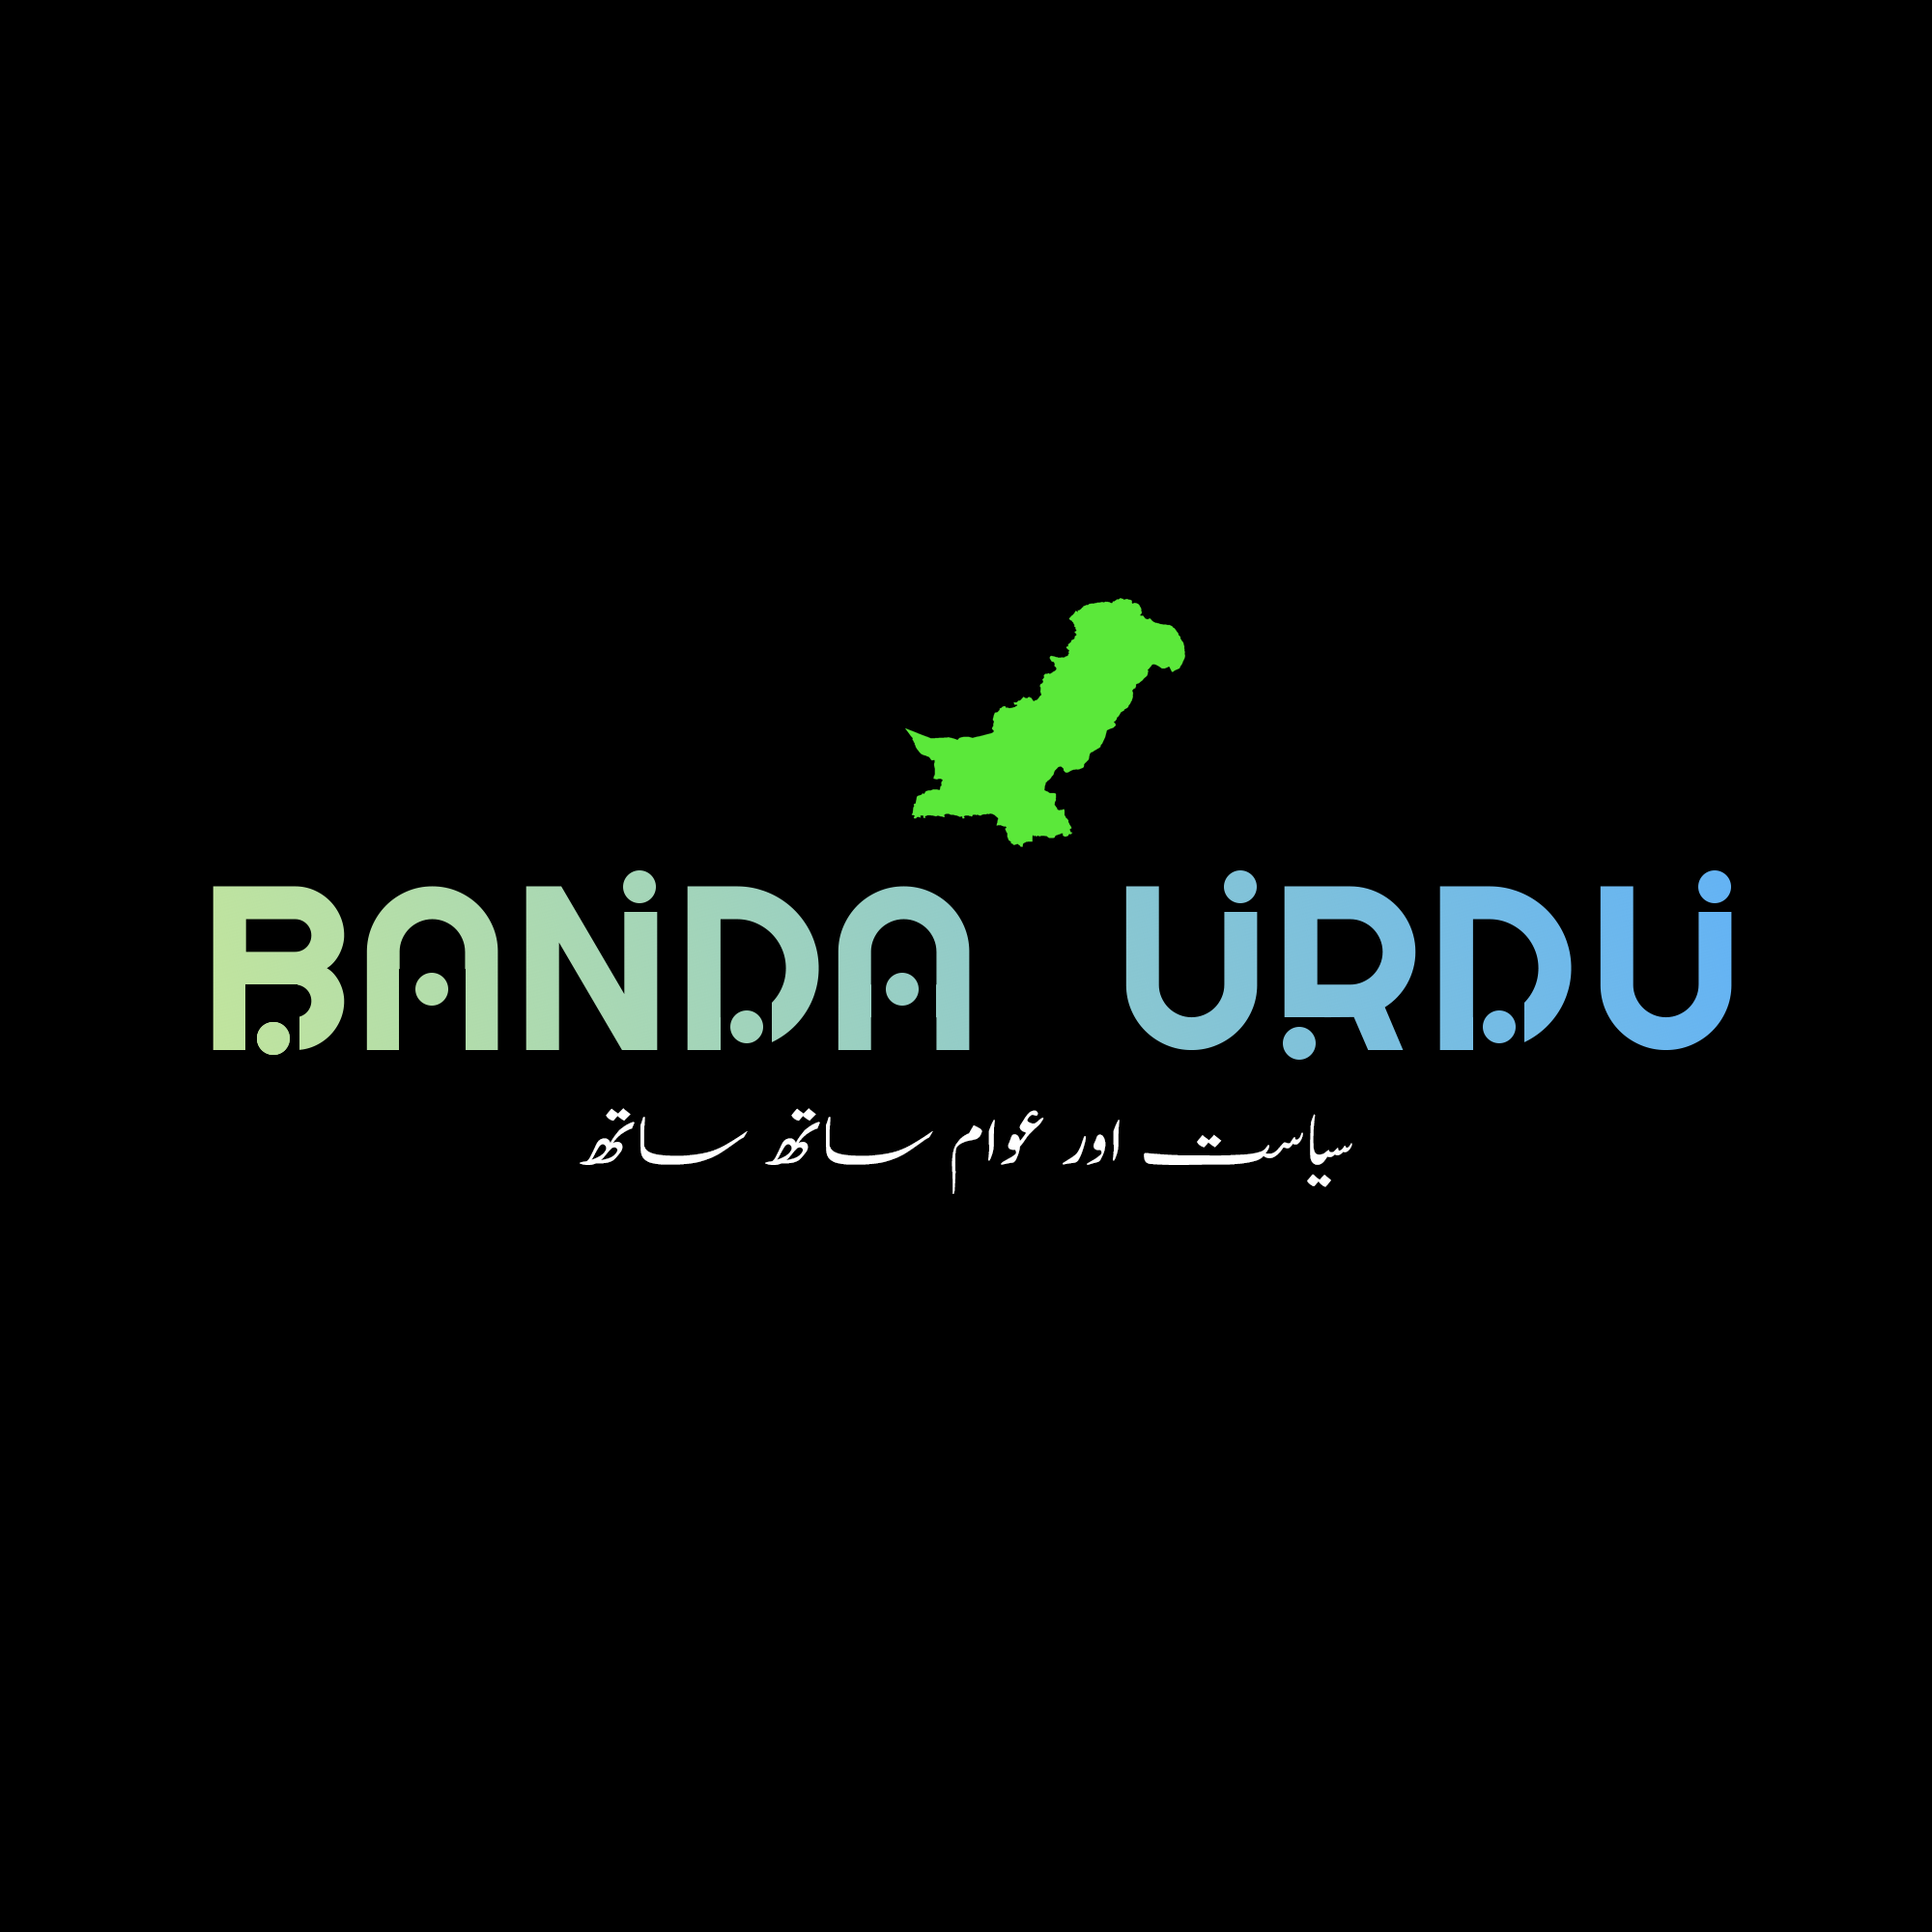 What is banda urdu? who is banda urdu?